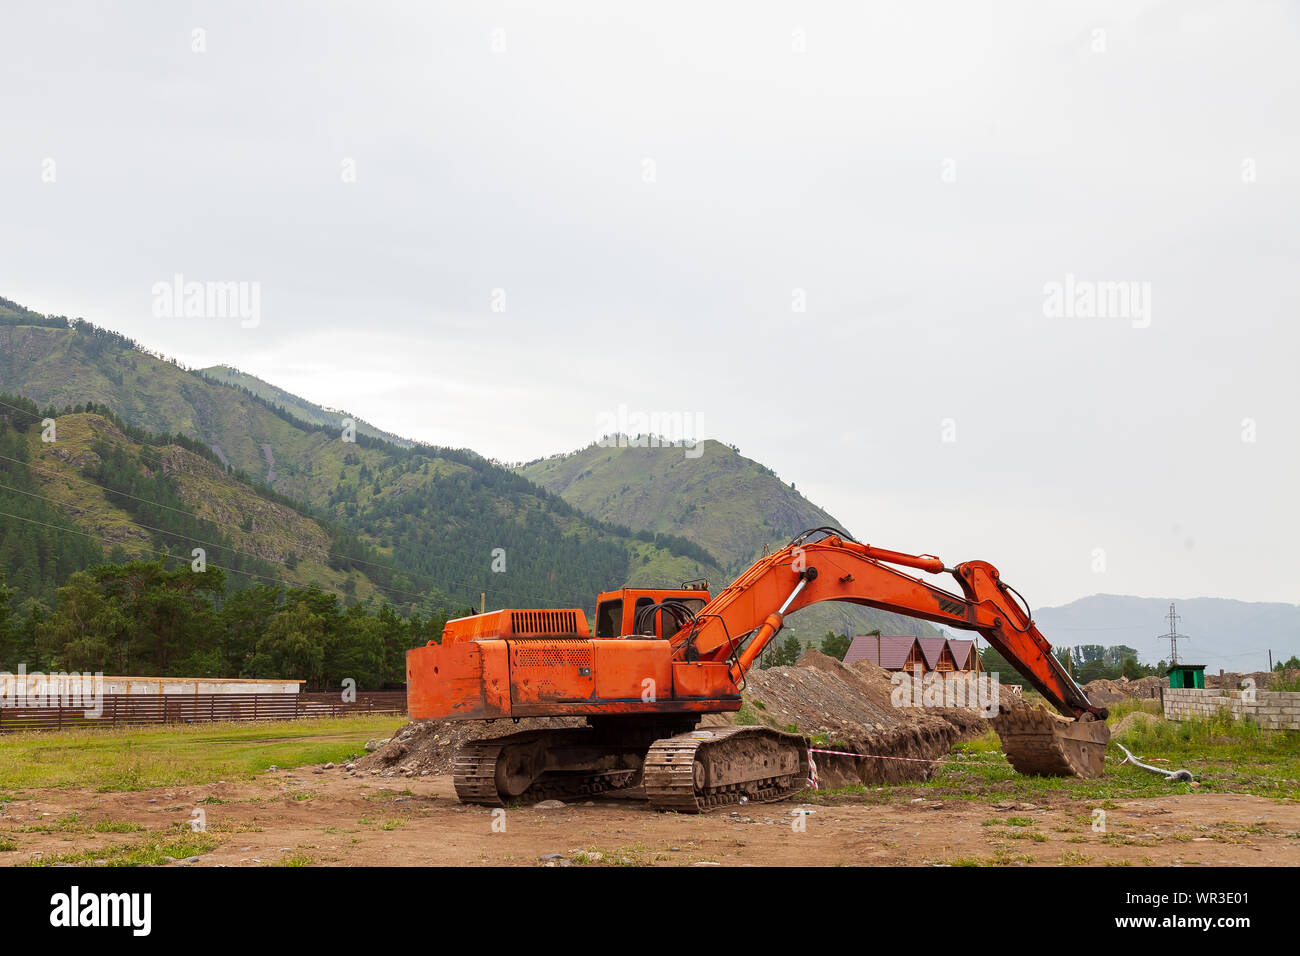 Grande pelle orange avec un godet abaissé durant les travaux de réparation dans les montagnes un jour d'été. Banque D'Images